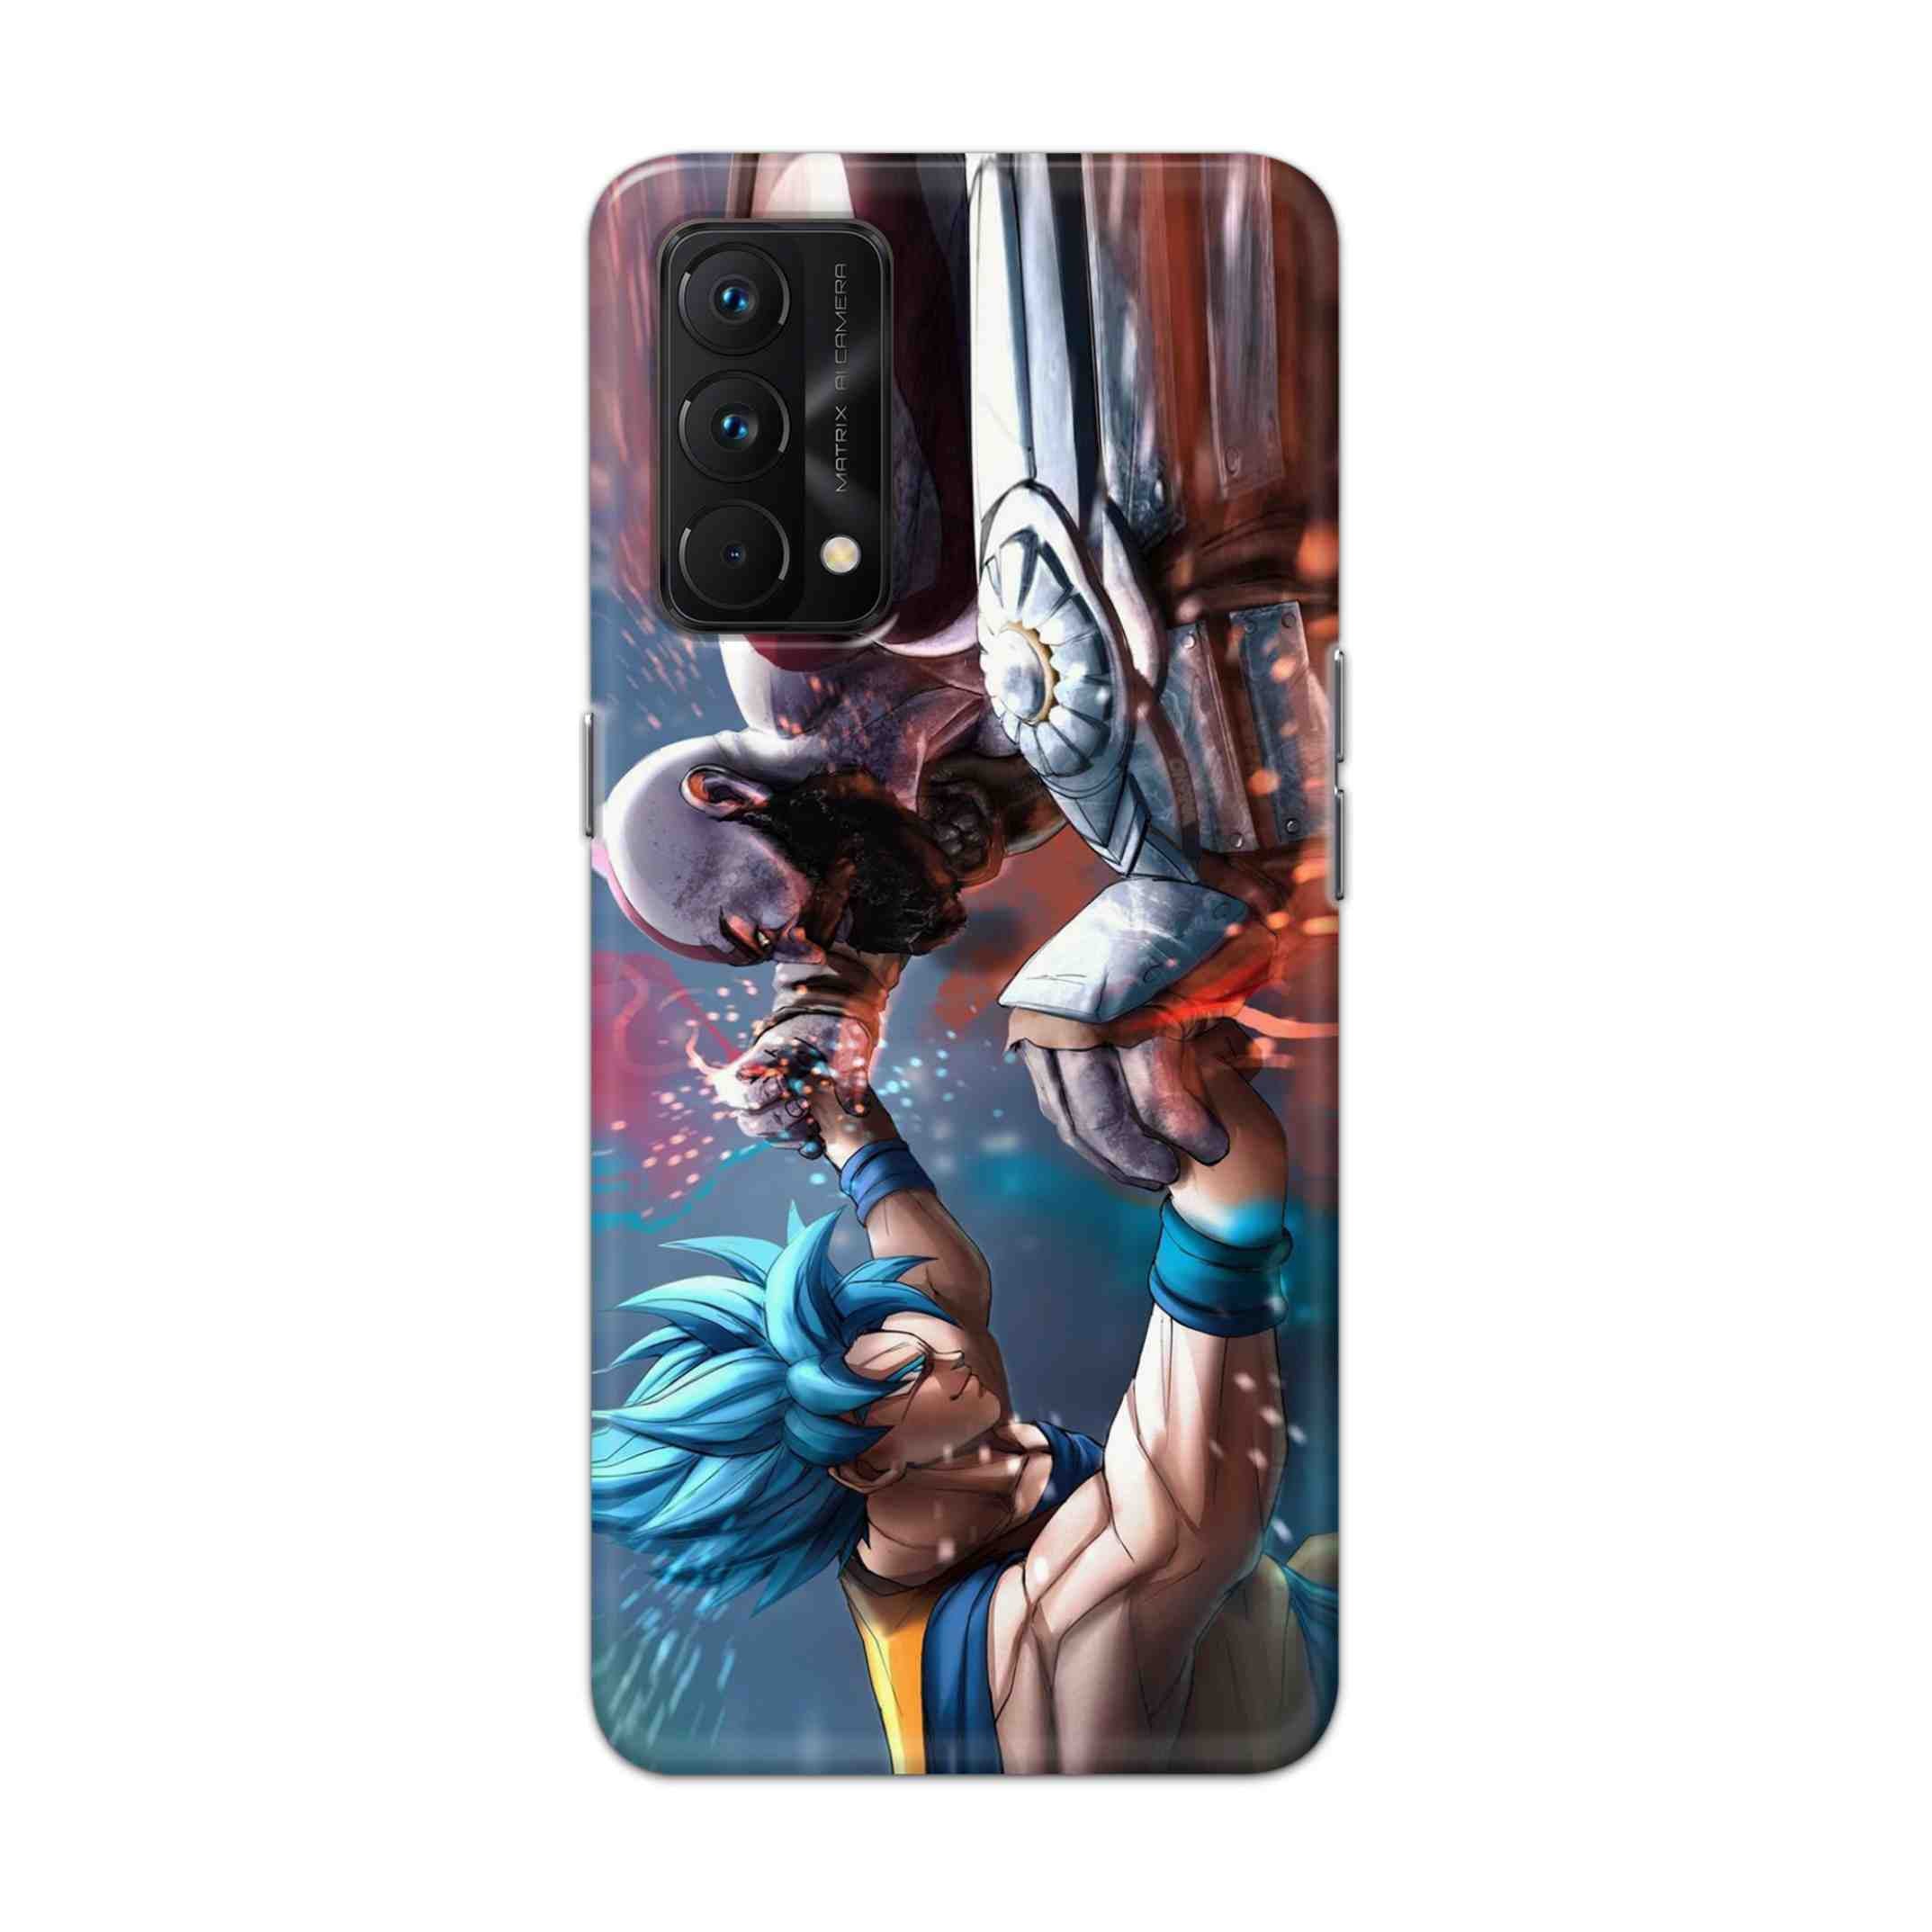 Buy Goku Vs Kratos Hard Back Mobile Phone Case Cover For Realme GT Master Online